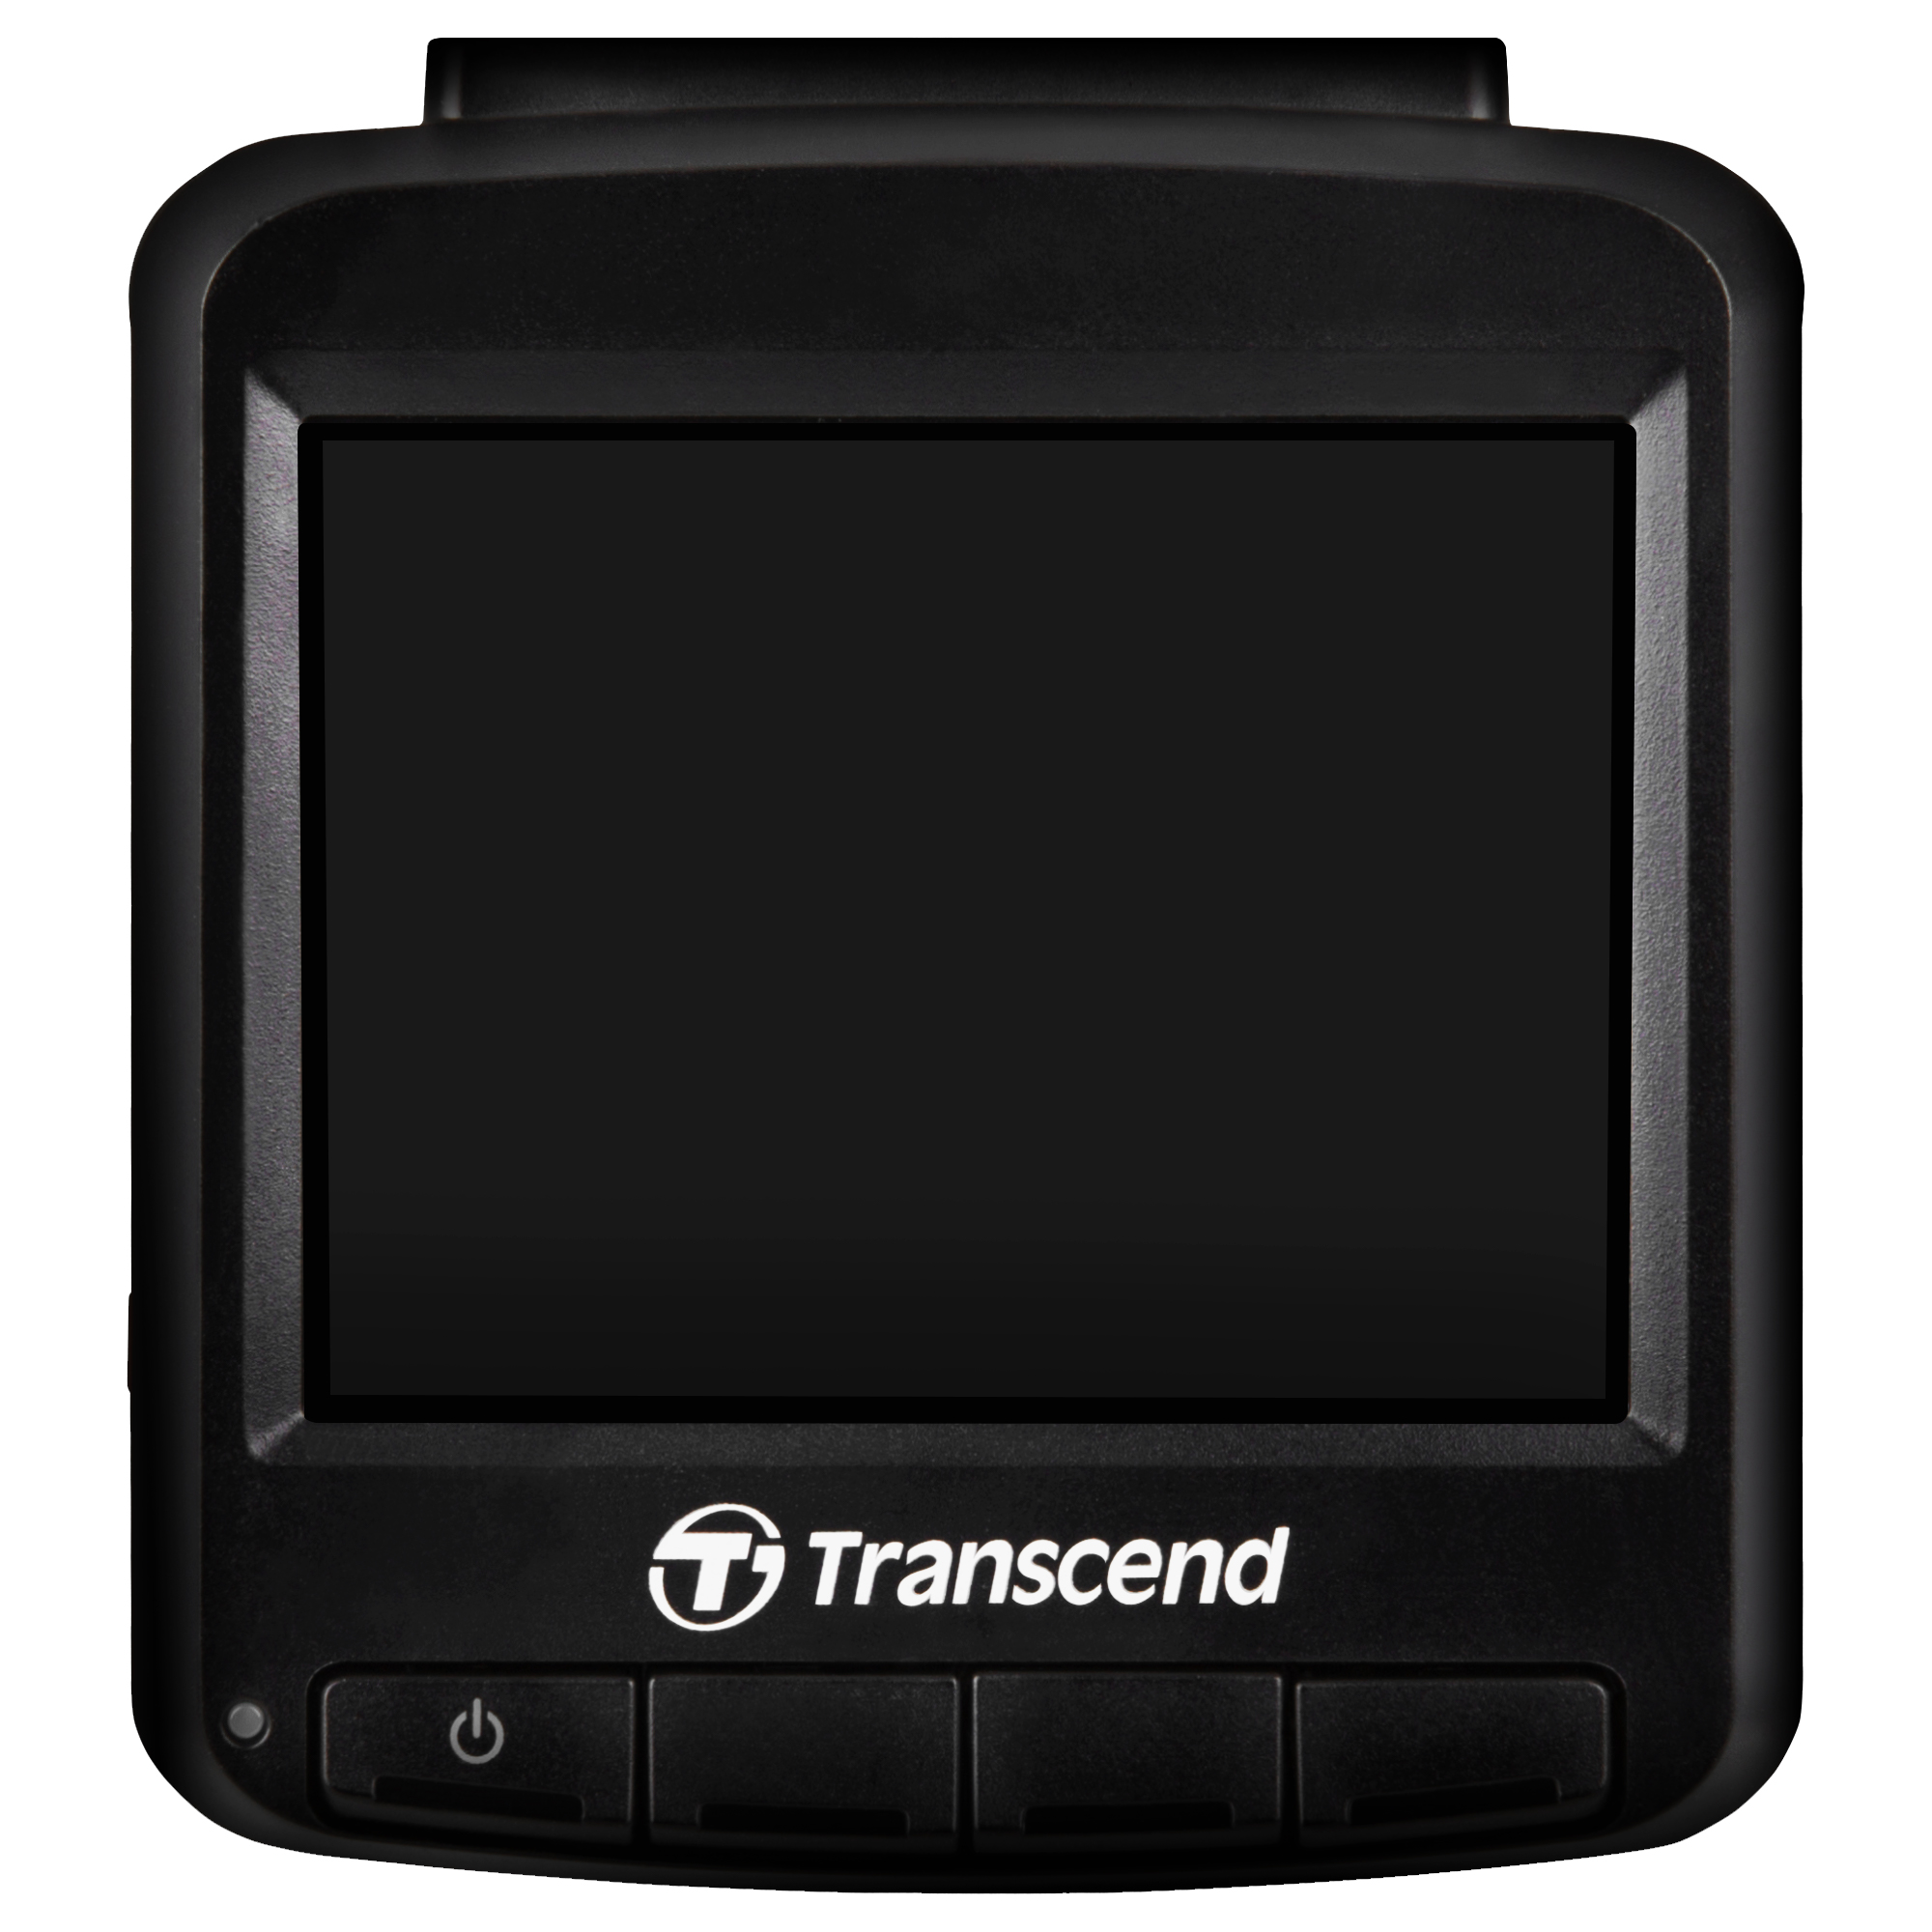 กล้องติดรถยนต์ Transcend's DrivePro 250 : WiFi ,Memory Card 32 GB - Transcend -รับประกัน 2 ปี - มีใบกำกับภาษี